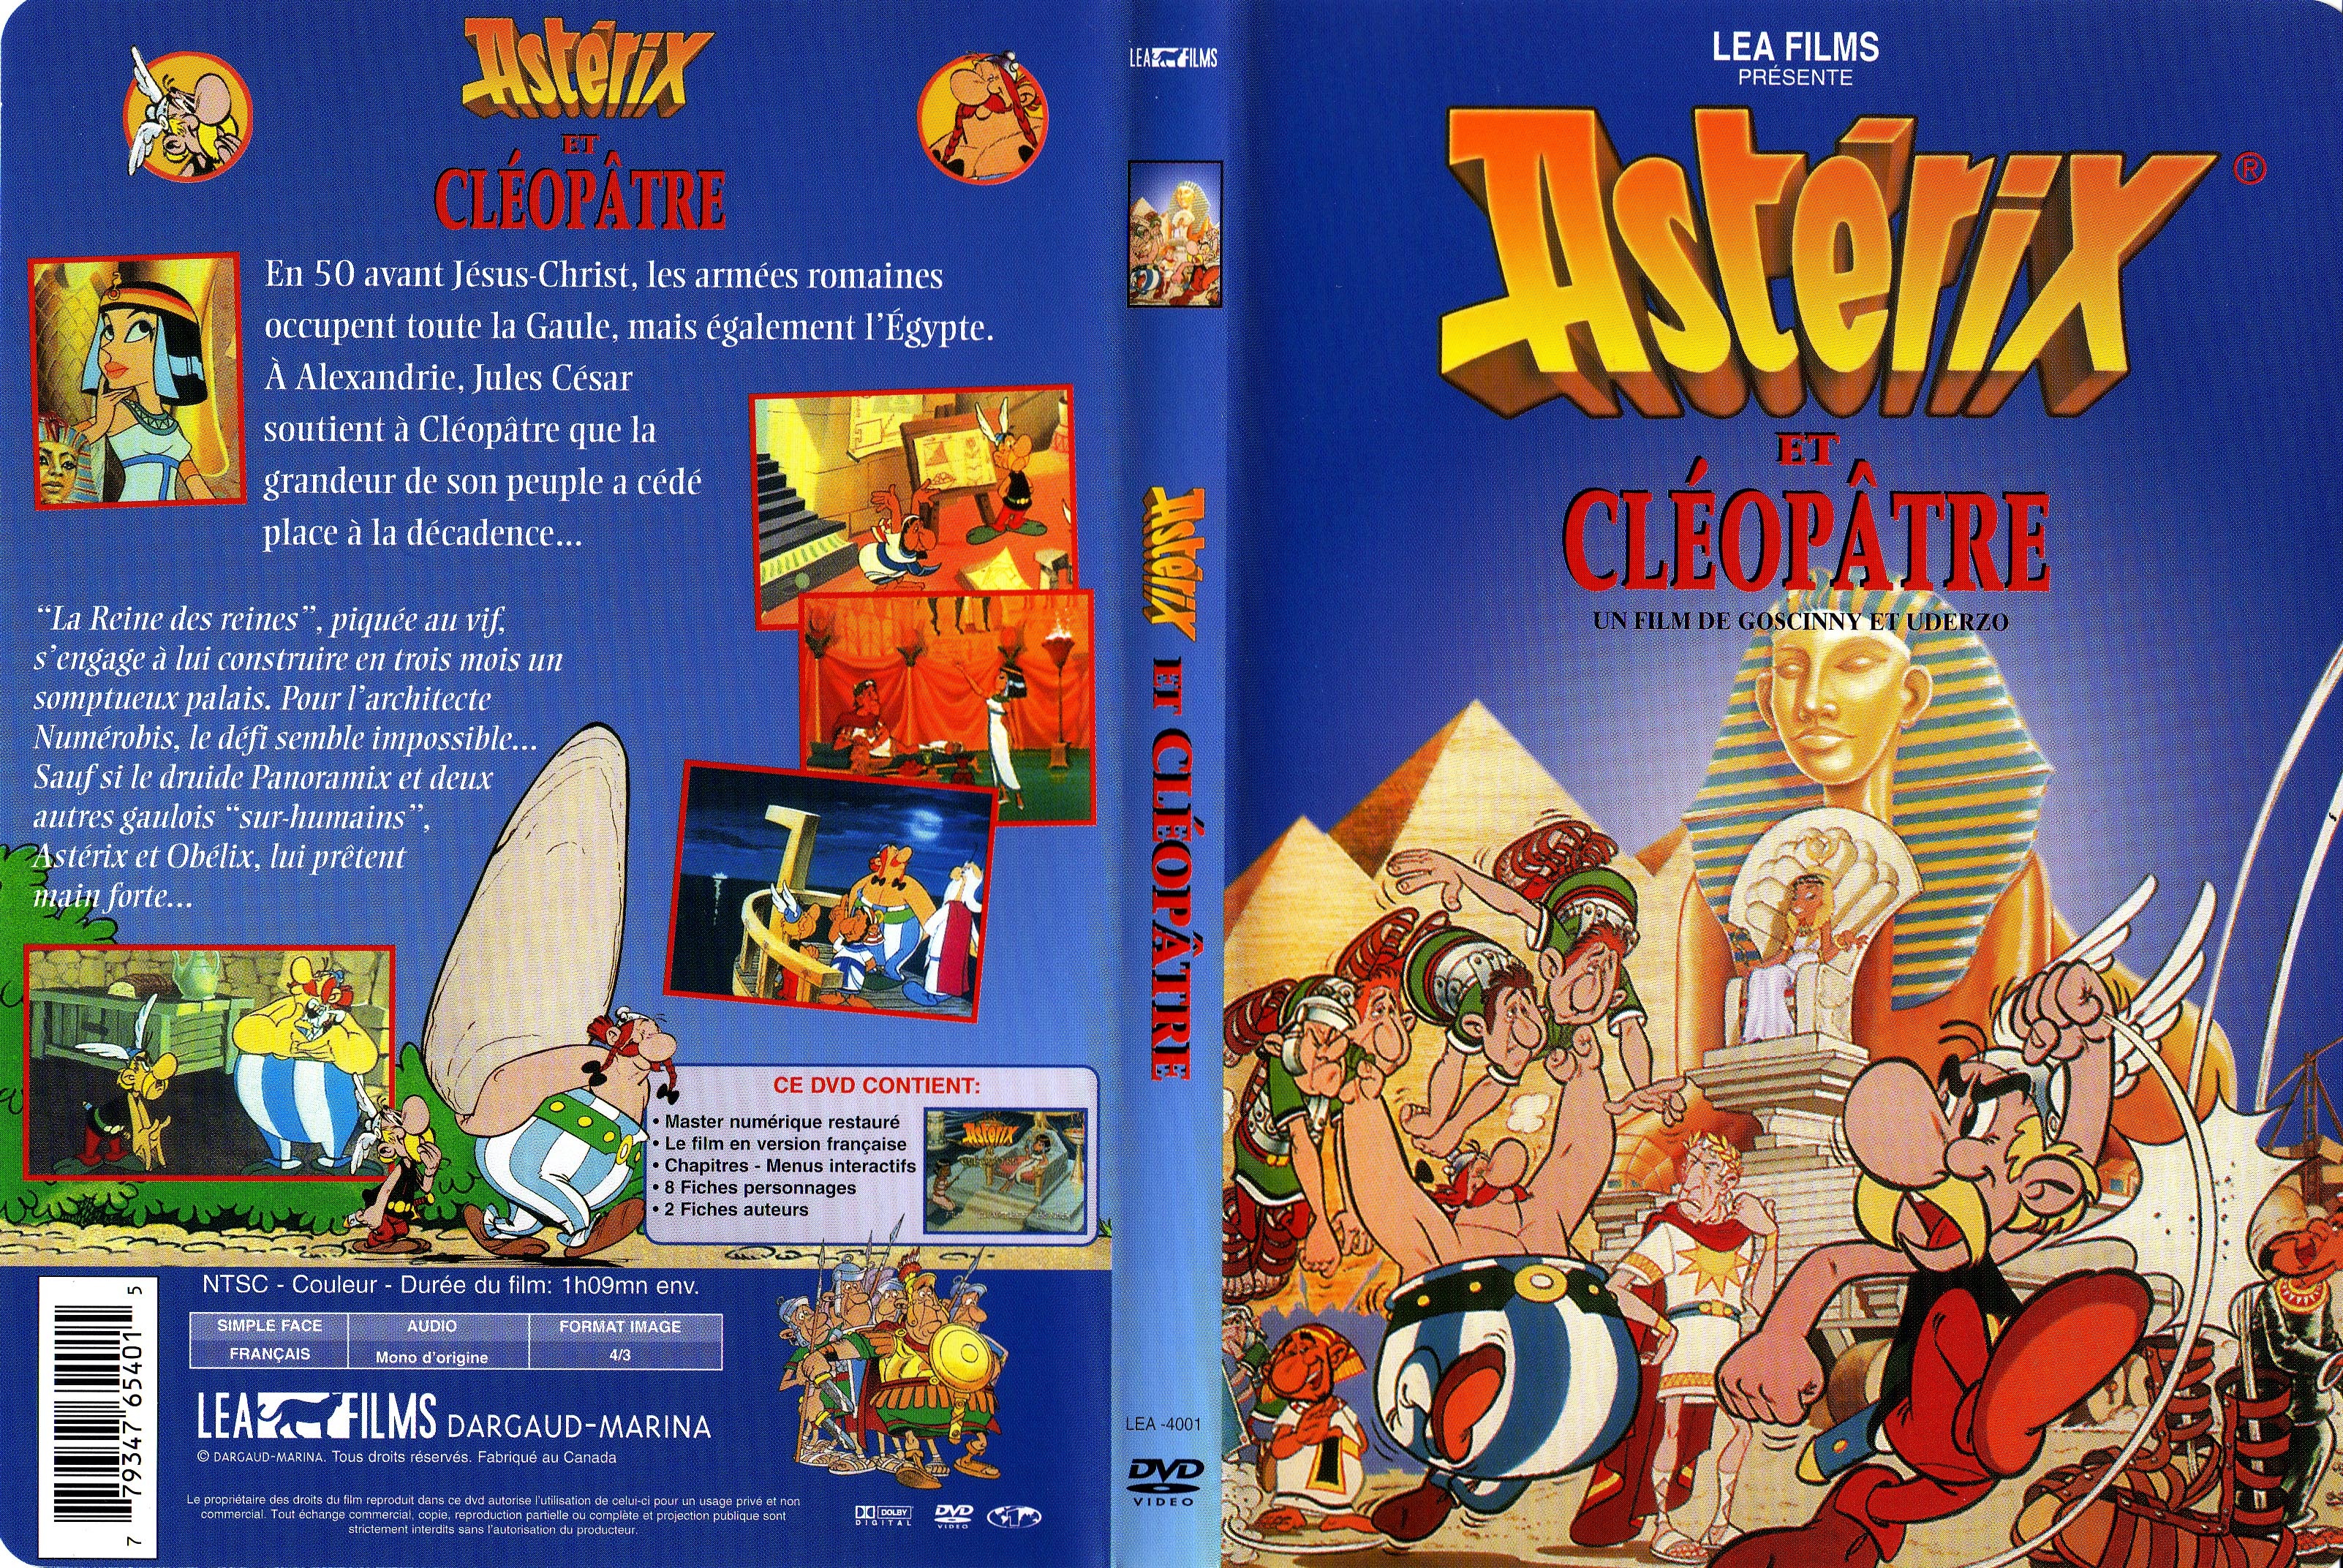 Jaquette DVD Asterix et Cleopatre